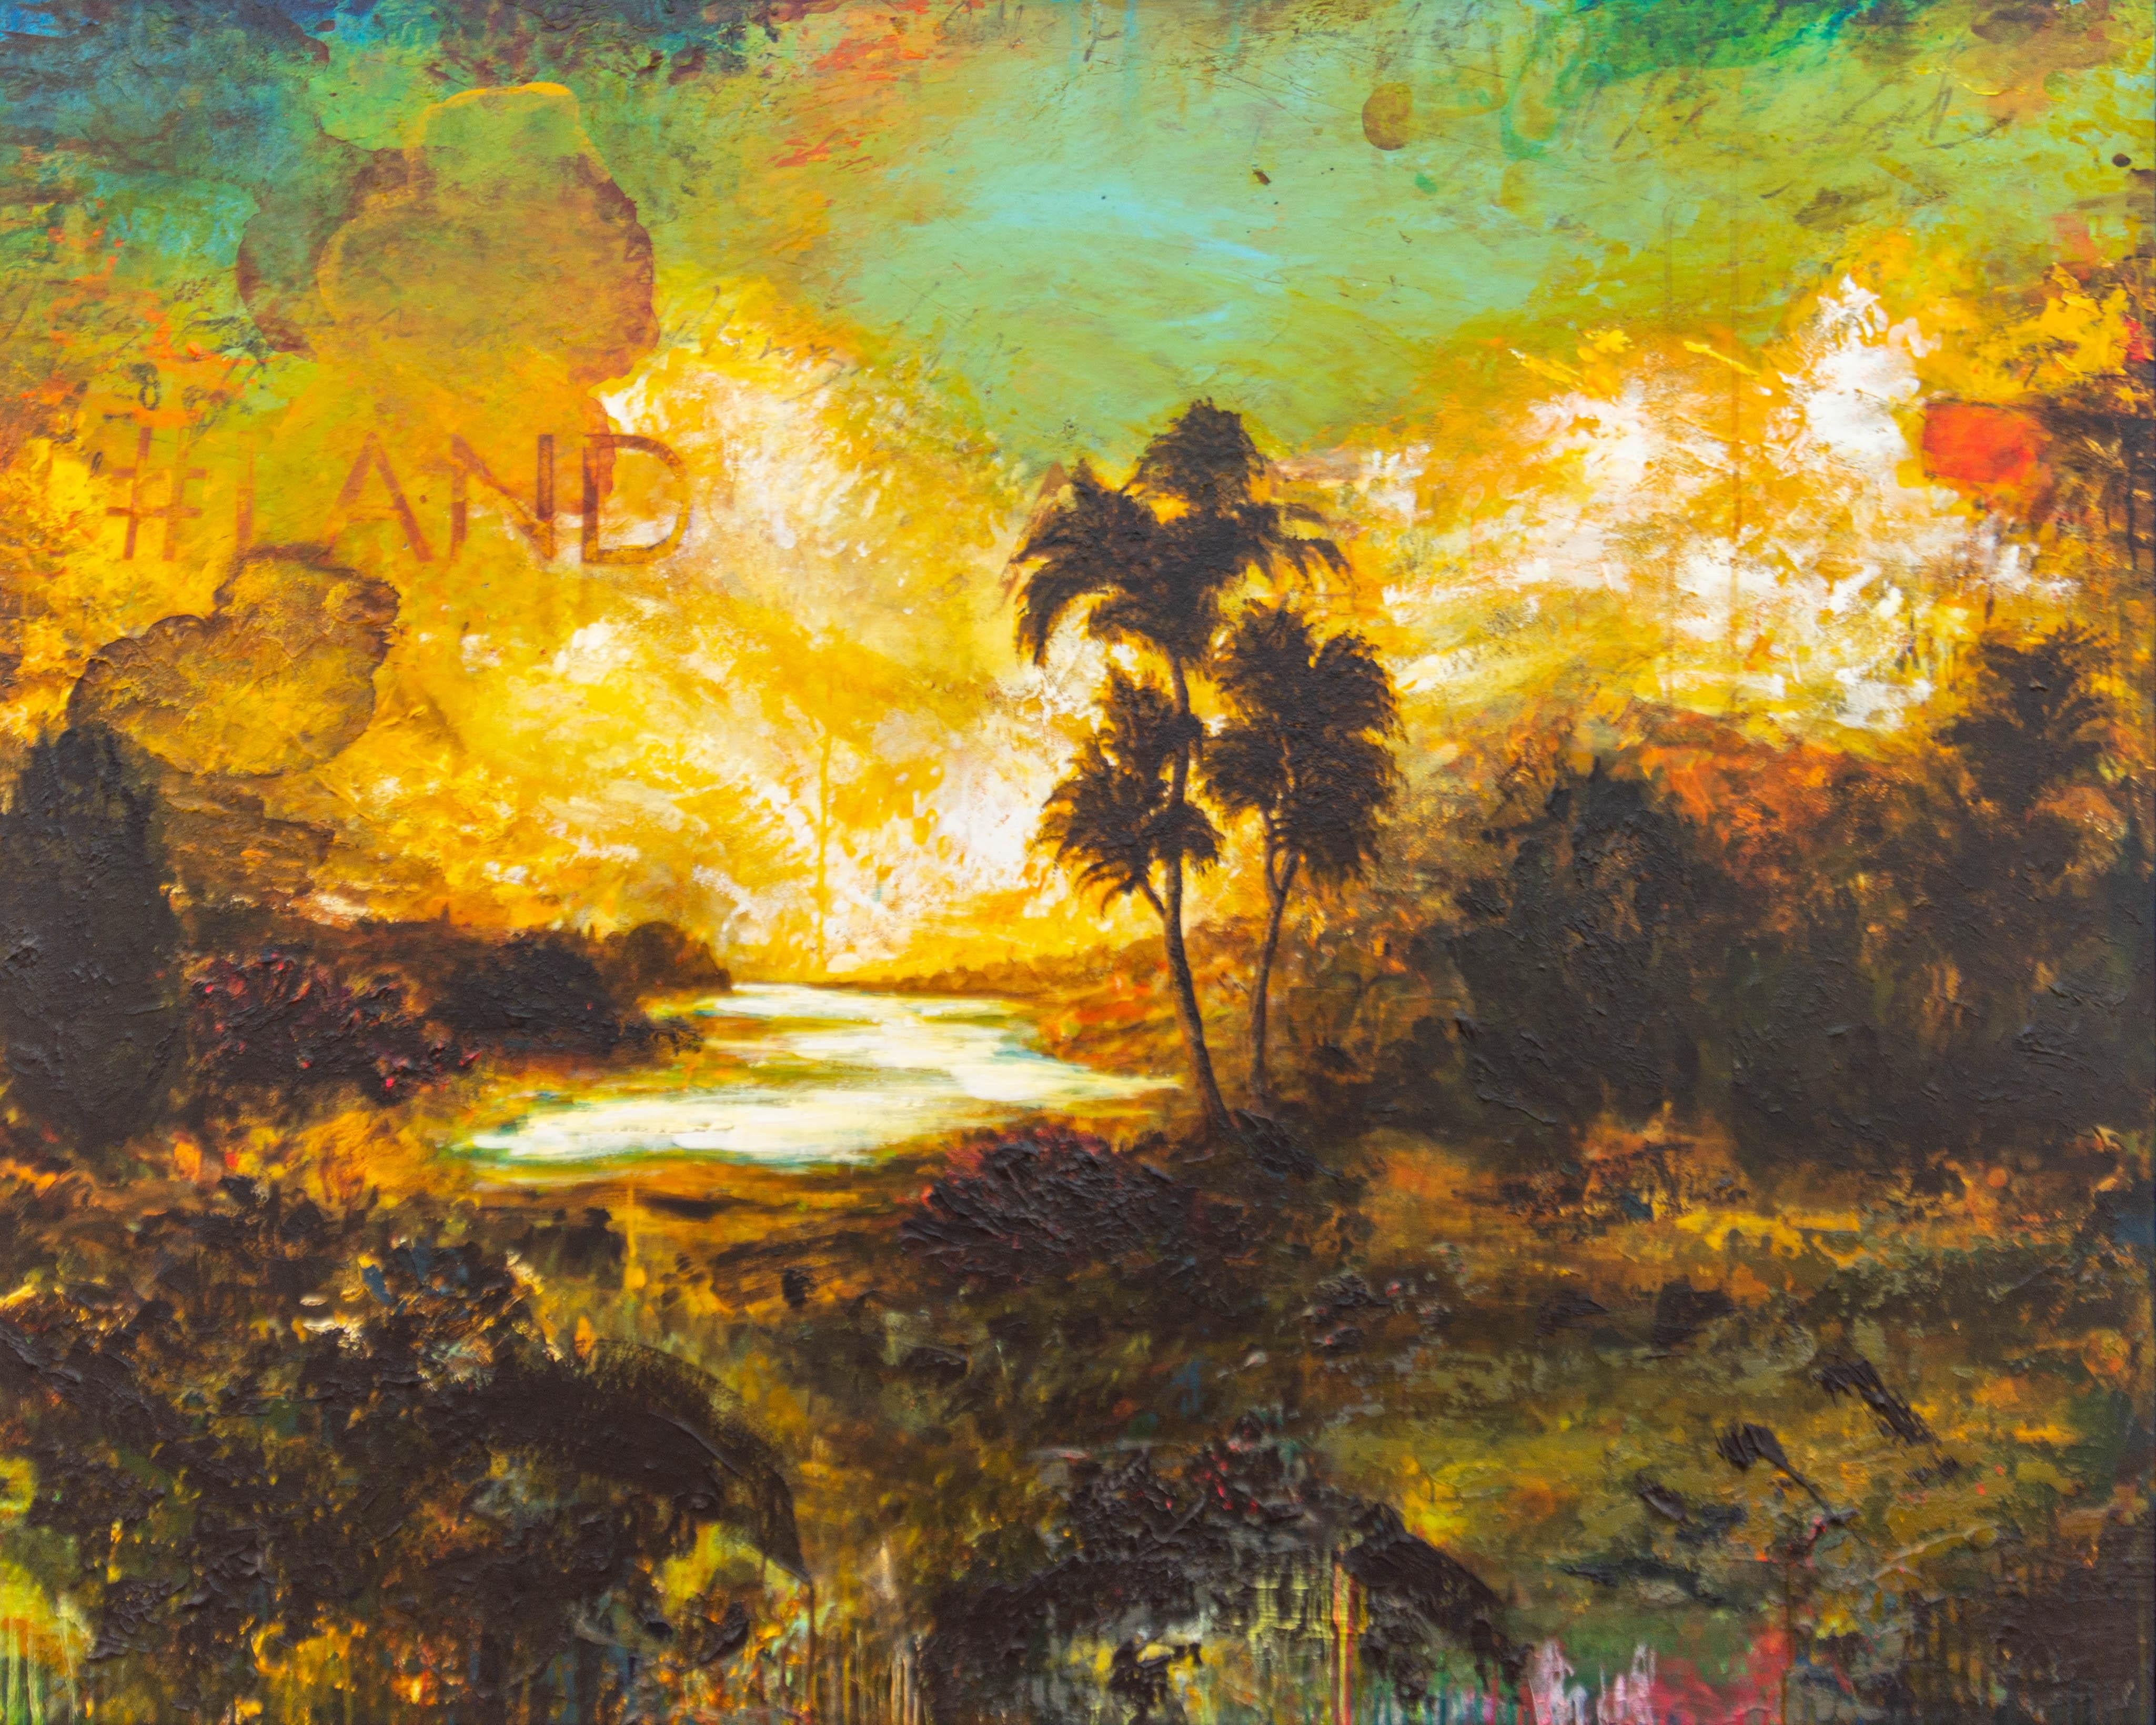 Sylvain Louis-Seize Landscape Painting - #Land - large, vibrant, bold, impressionist, landscape, acrylic on panel